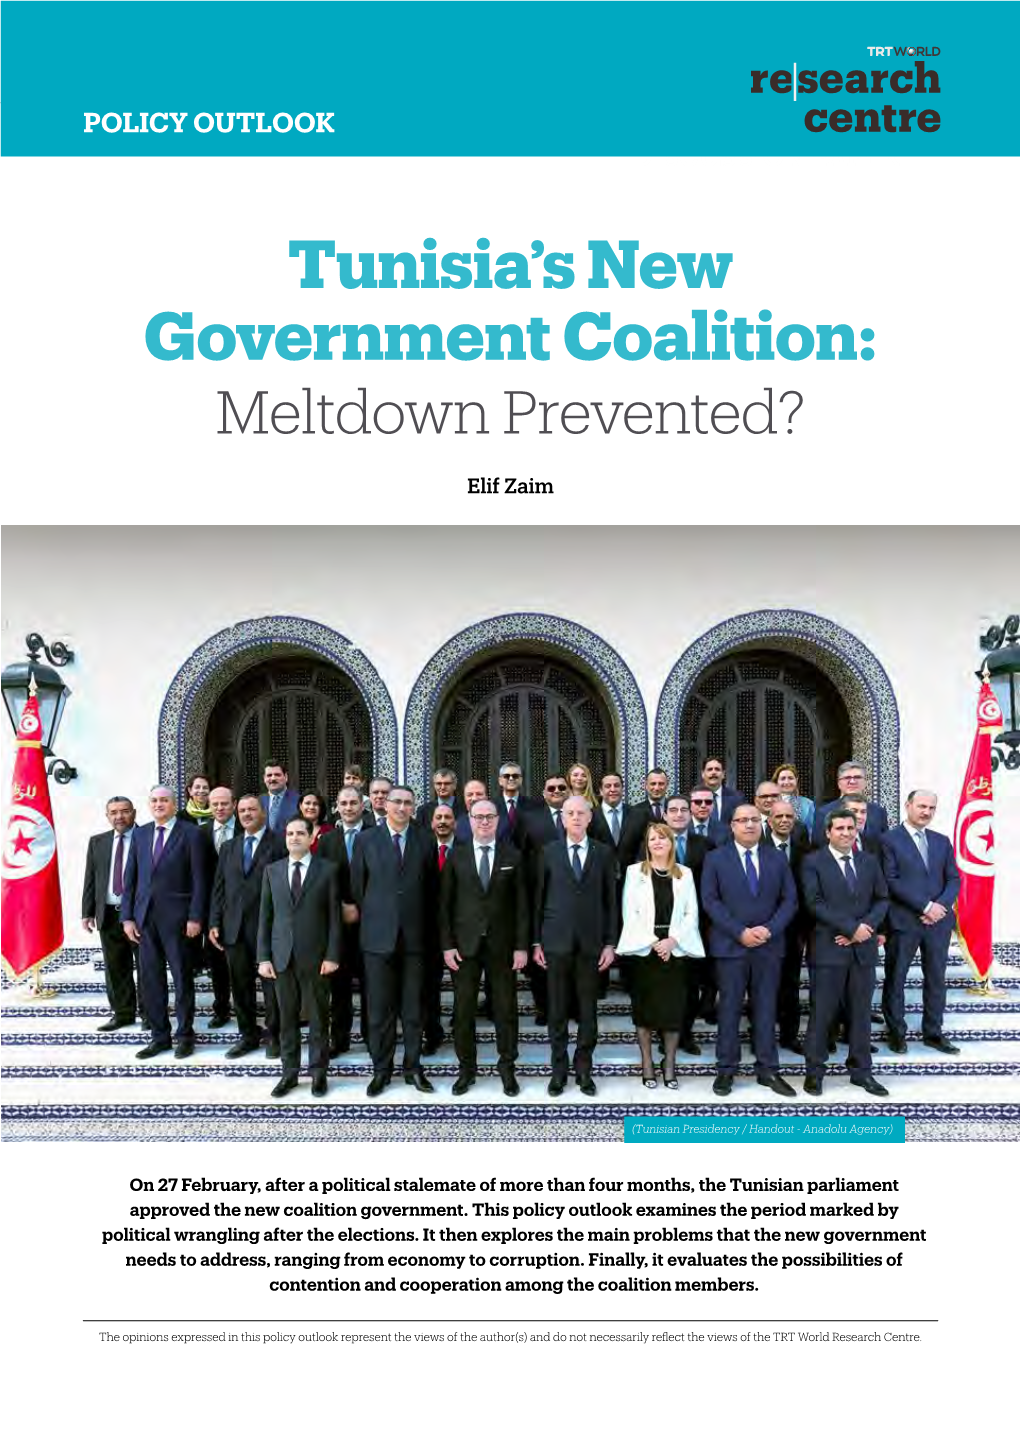 Tunisia's New Government Coalition